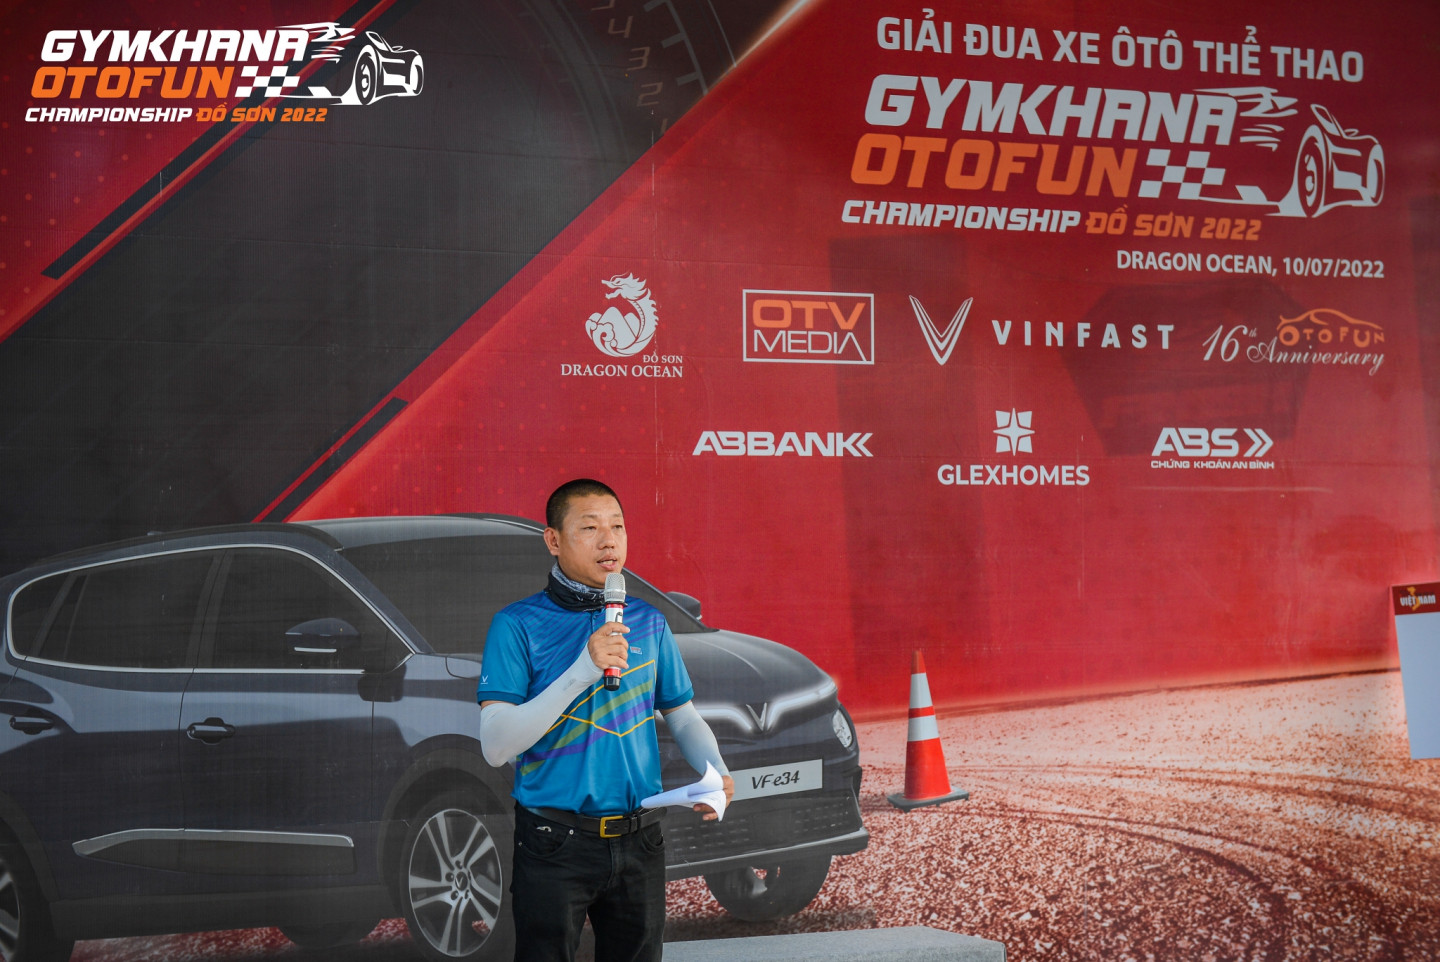 Giải đua xe tại Đồ Sơn là giải gymkhana cho oto lần thứ hai được tổ chức ở Hải Phòng.